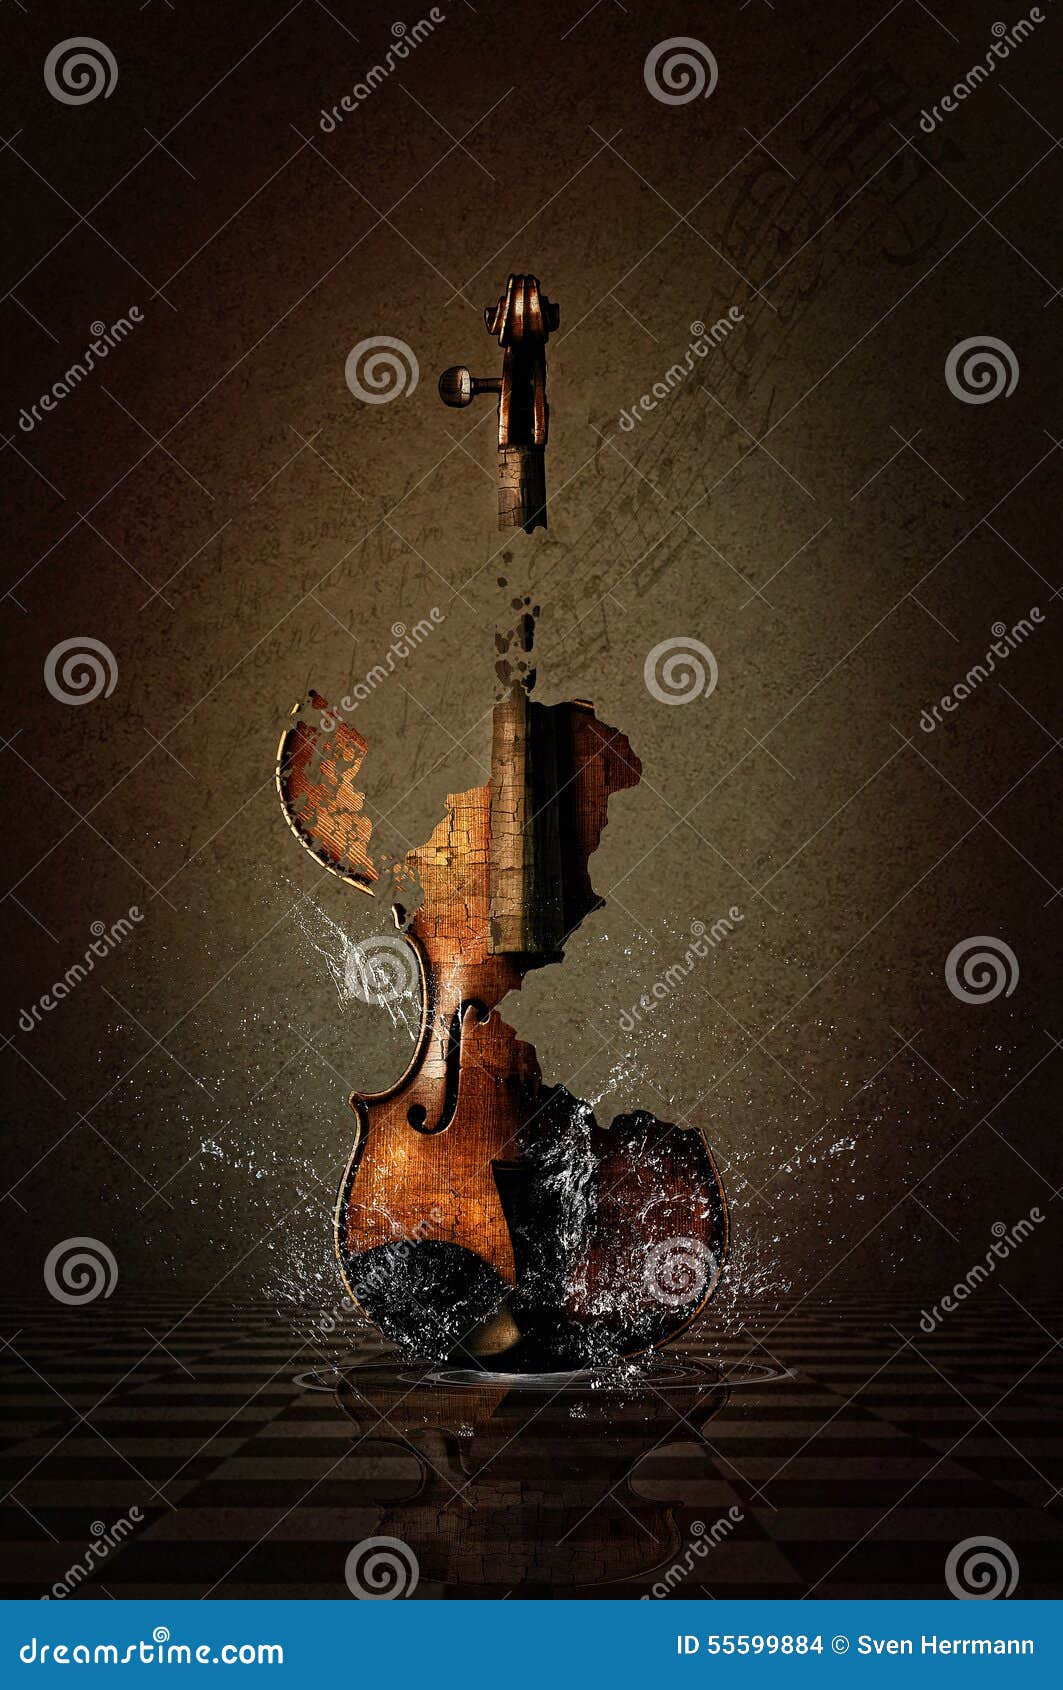 Zerbrochene Violine im Wasser. Surreales Bild der zerbrochenen Violine im Spritzwasser Mit musikalischem Hintergrund und dunkler Beleuchtung